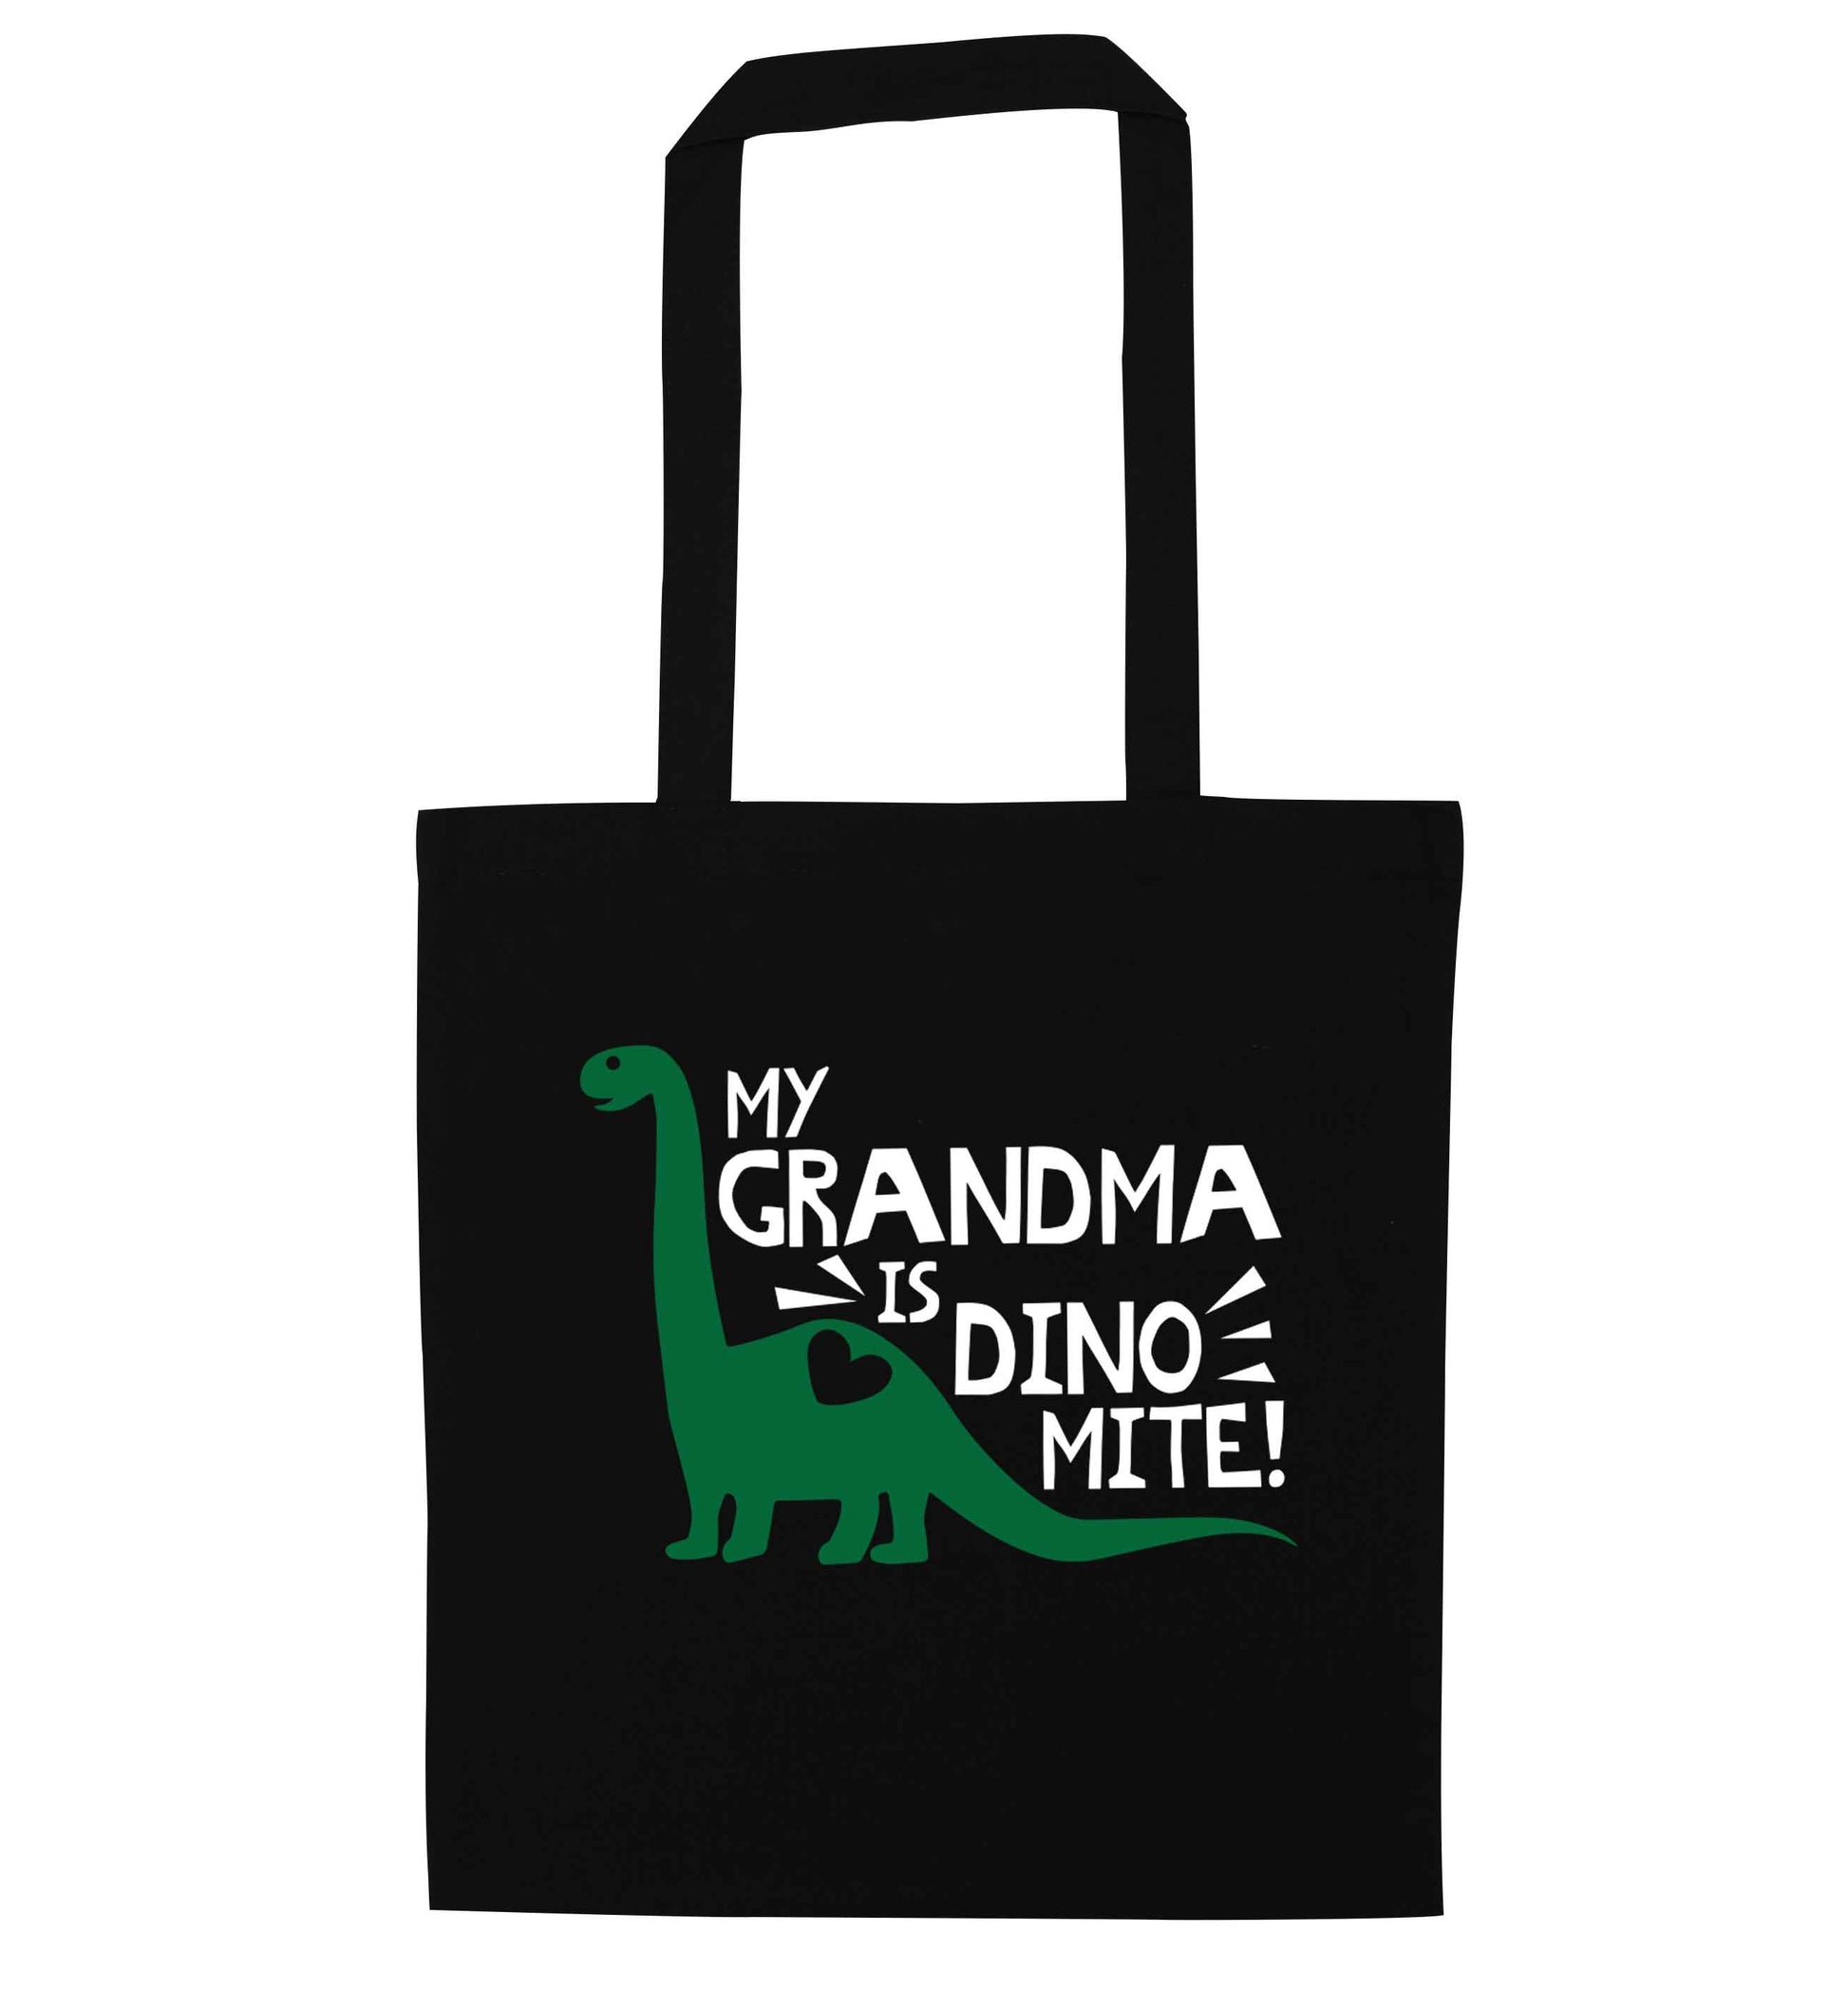 My grandma is dinomite! black tote bag